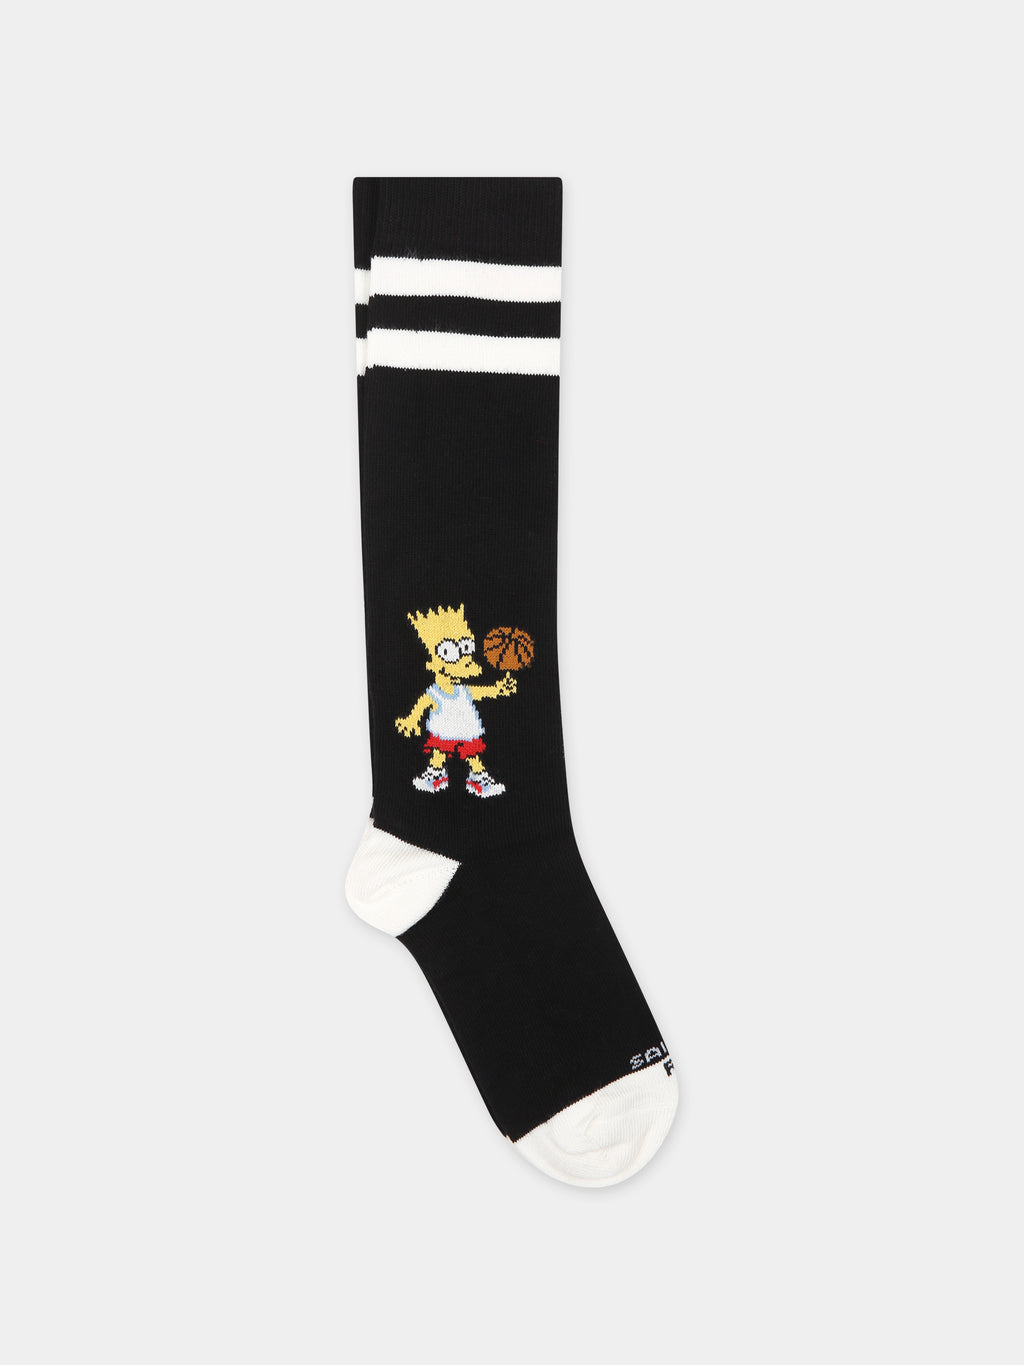 Black socks for children with Bart Simpson